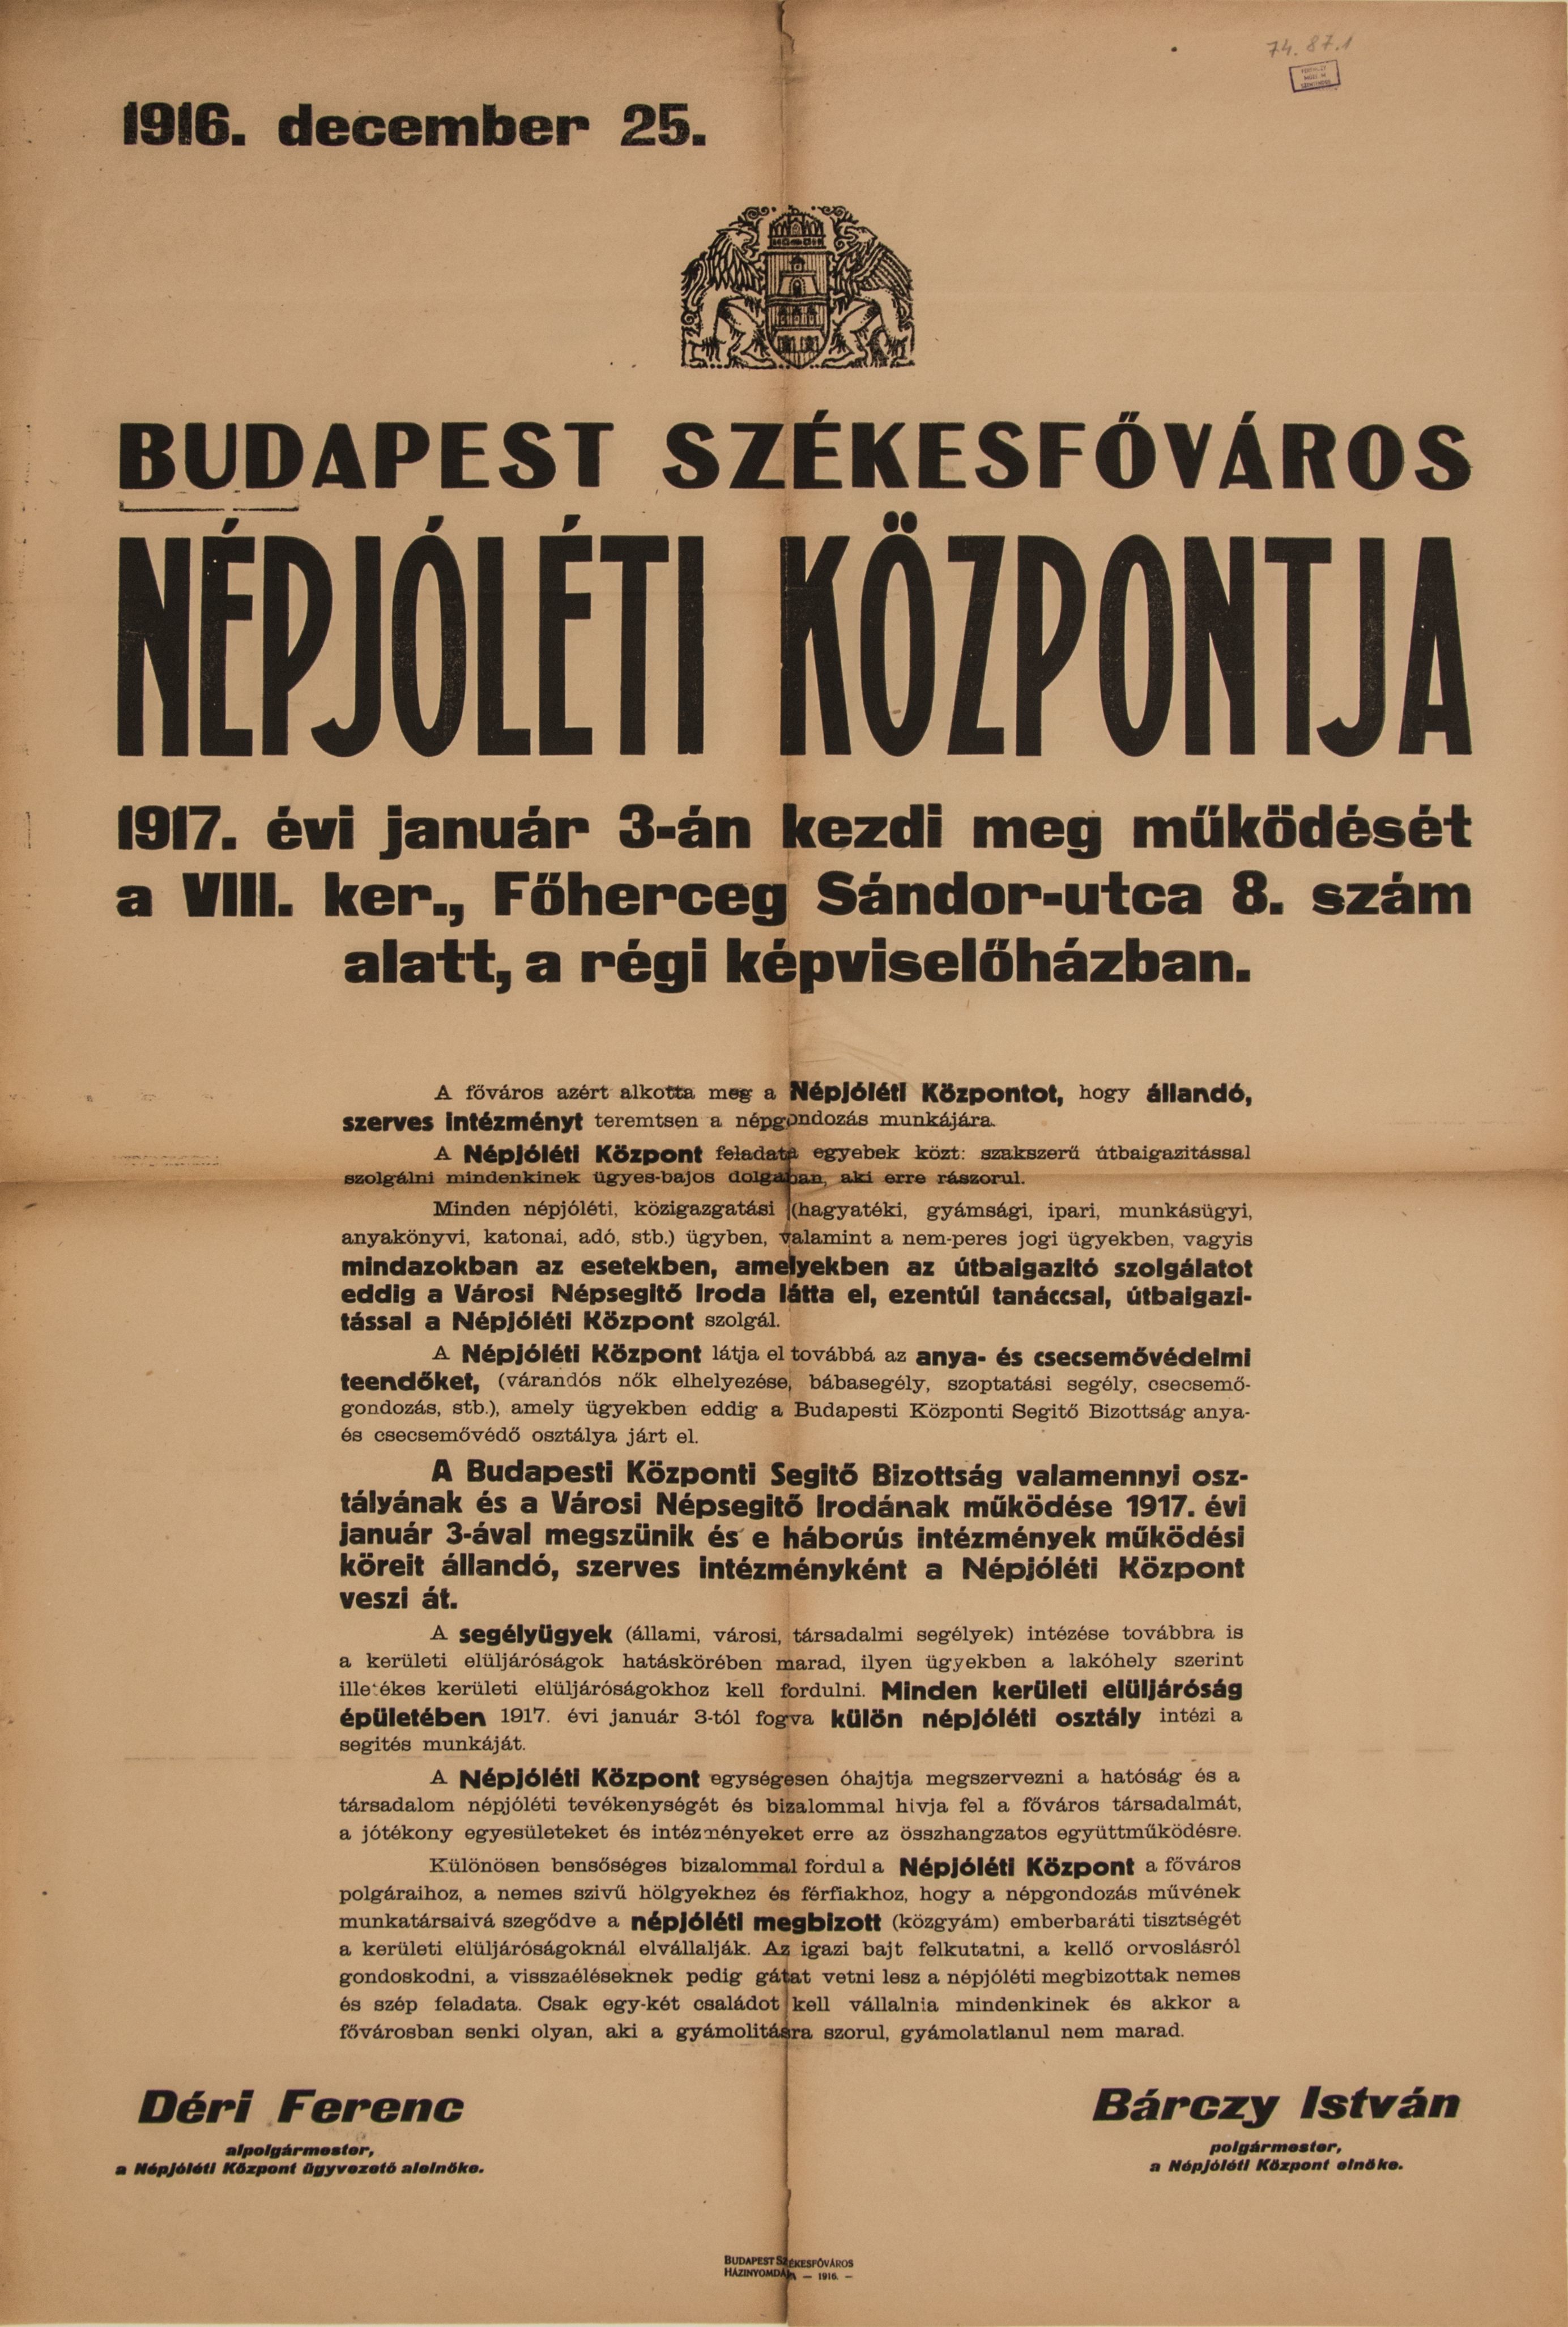 Felhívás a Népjóléti Központ mükődésének megkezdése alkalmából, 1916.12.25. (Ferenczy Múzeumi Centrum CC BY-NC-SA)